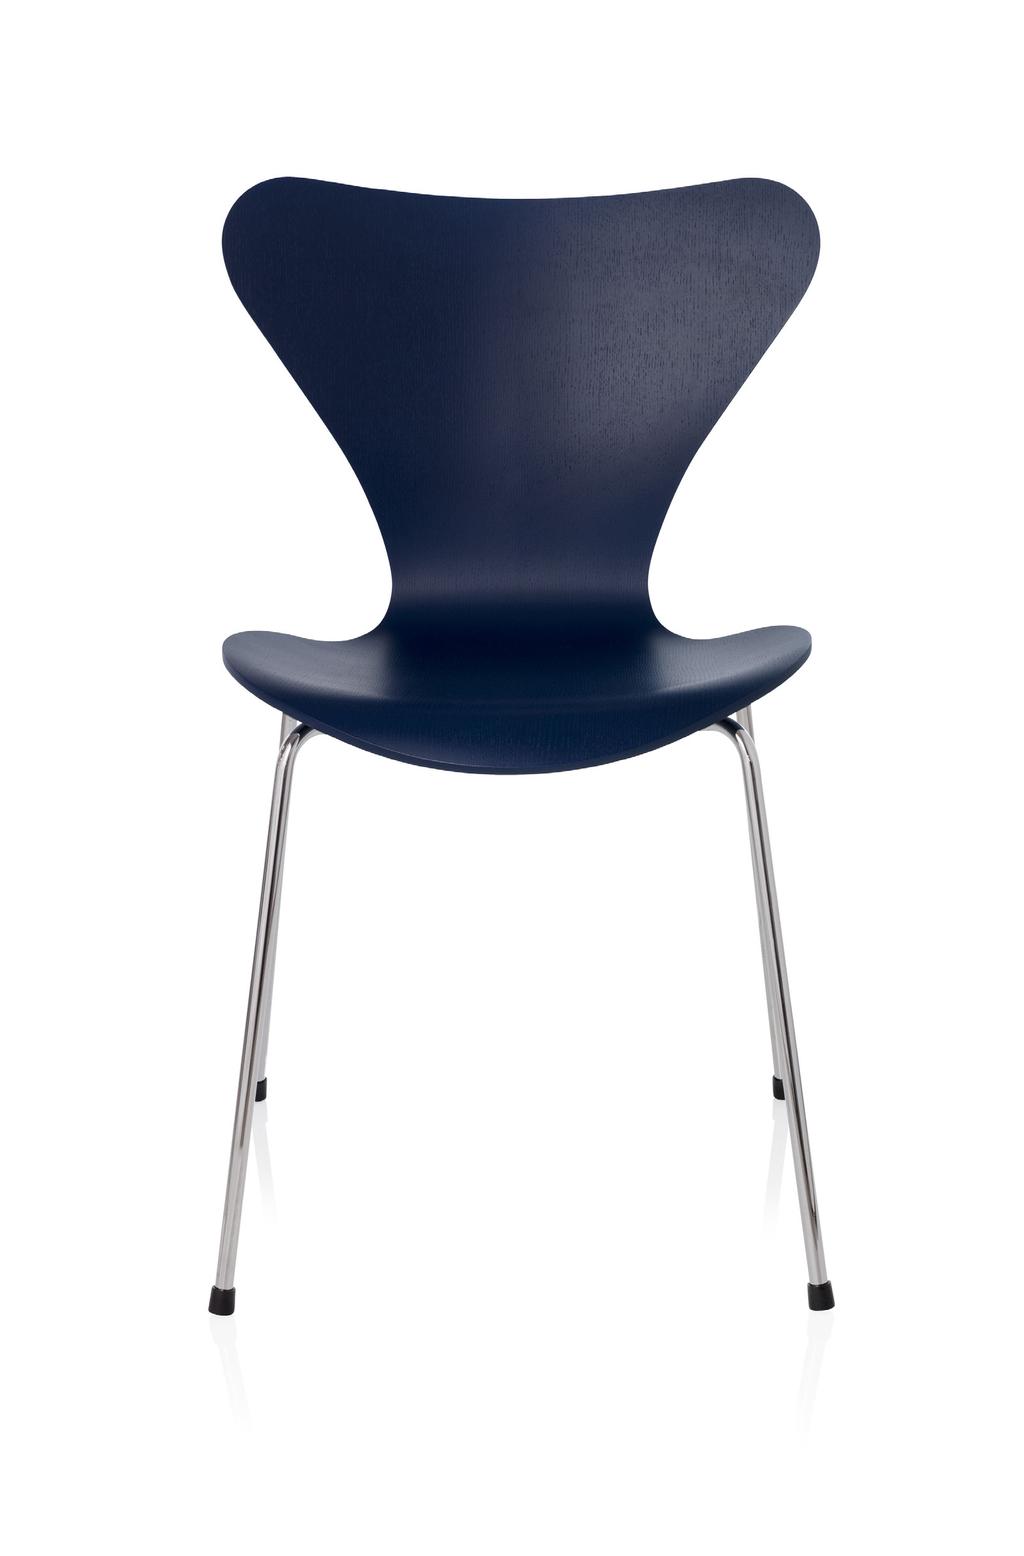 SERIE 7 Serie 7 designad av Arne Jacobsen är den överlägset mest sålda stolen i Fritz Hansens historia och kanske även i möbelhistorien.